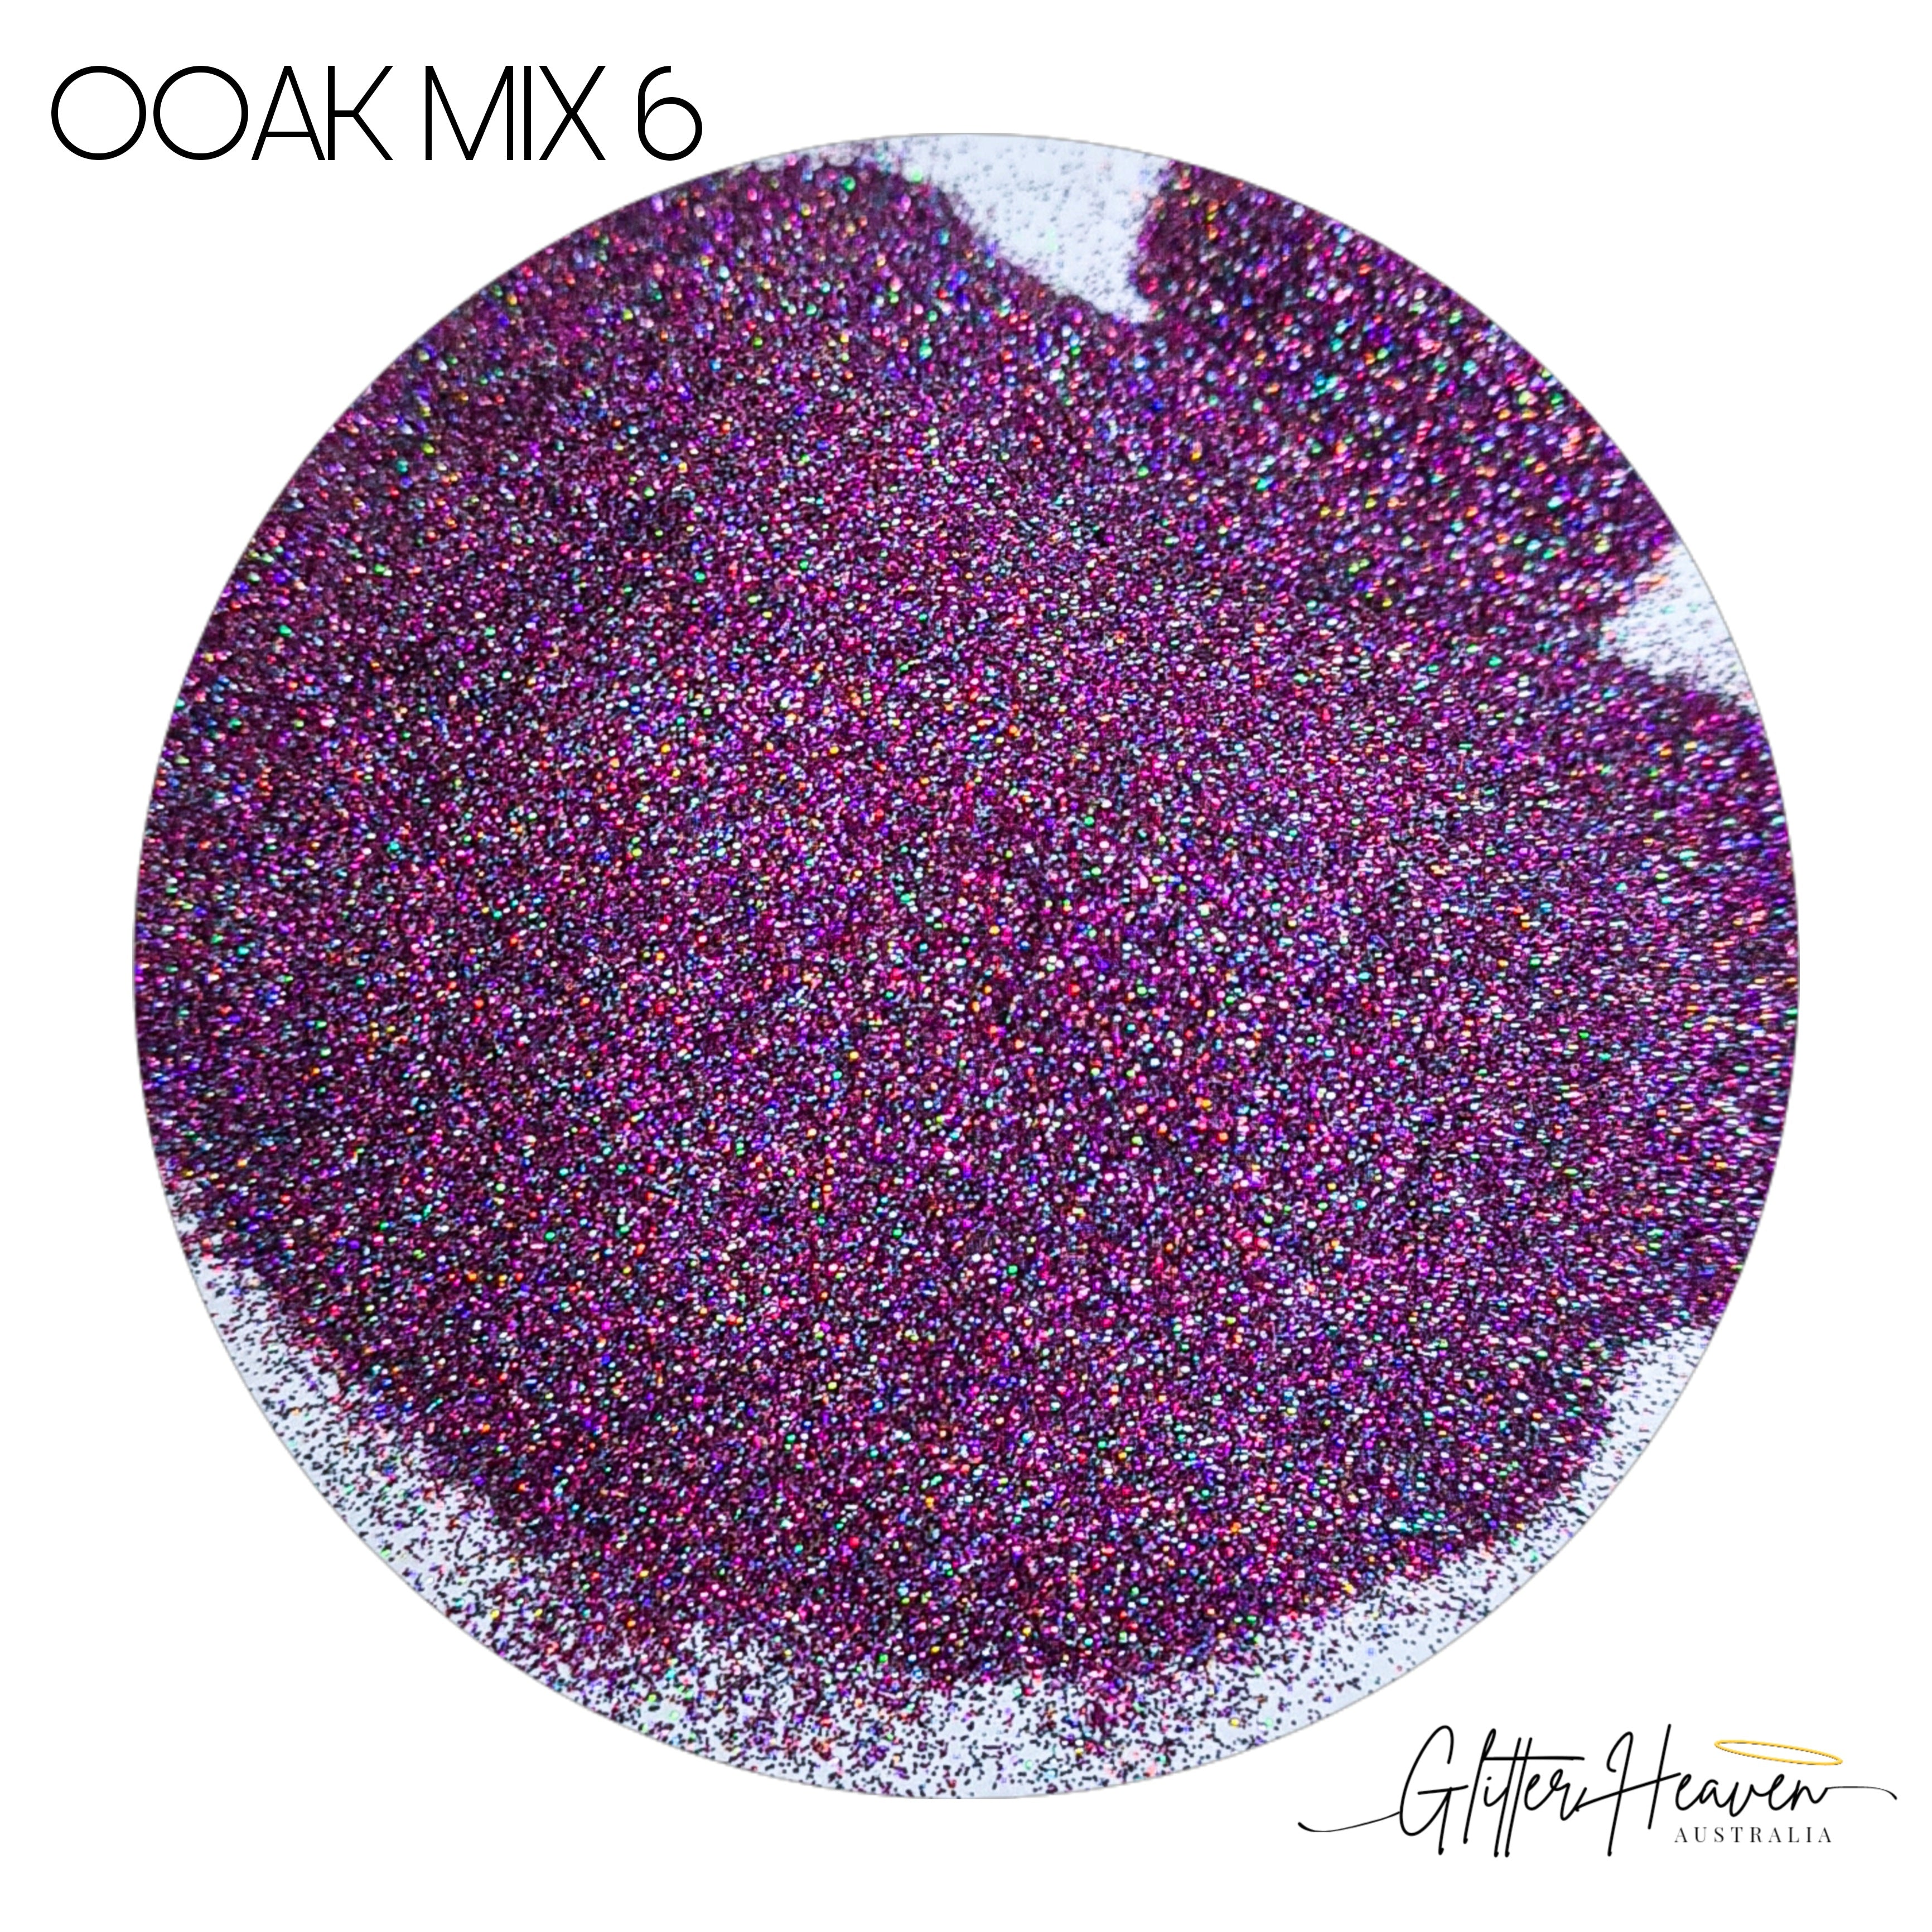 OOAK MIX 6